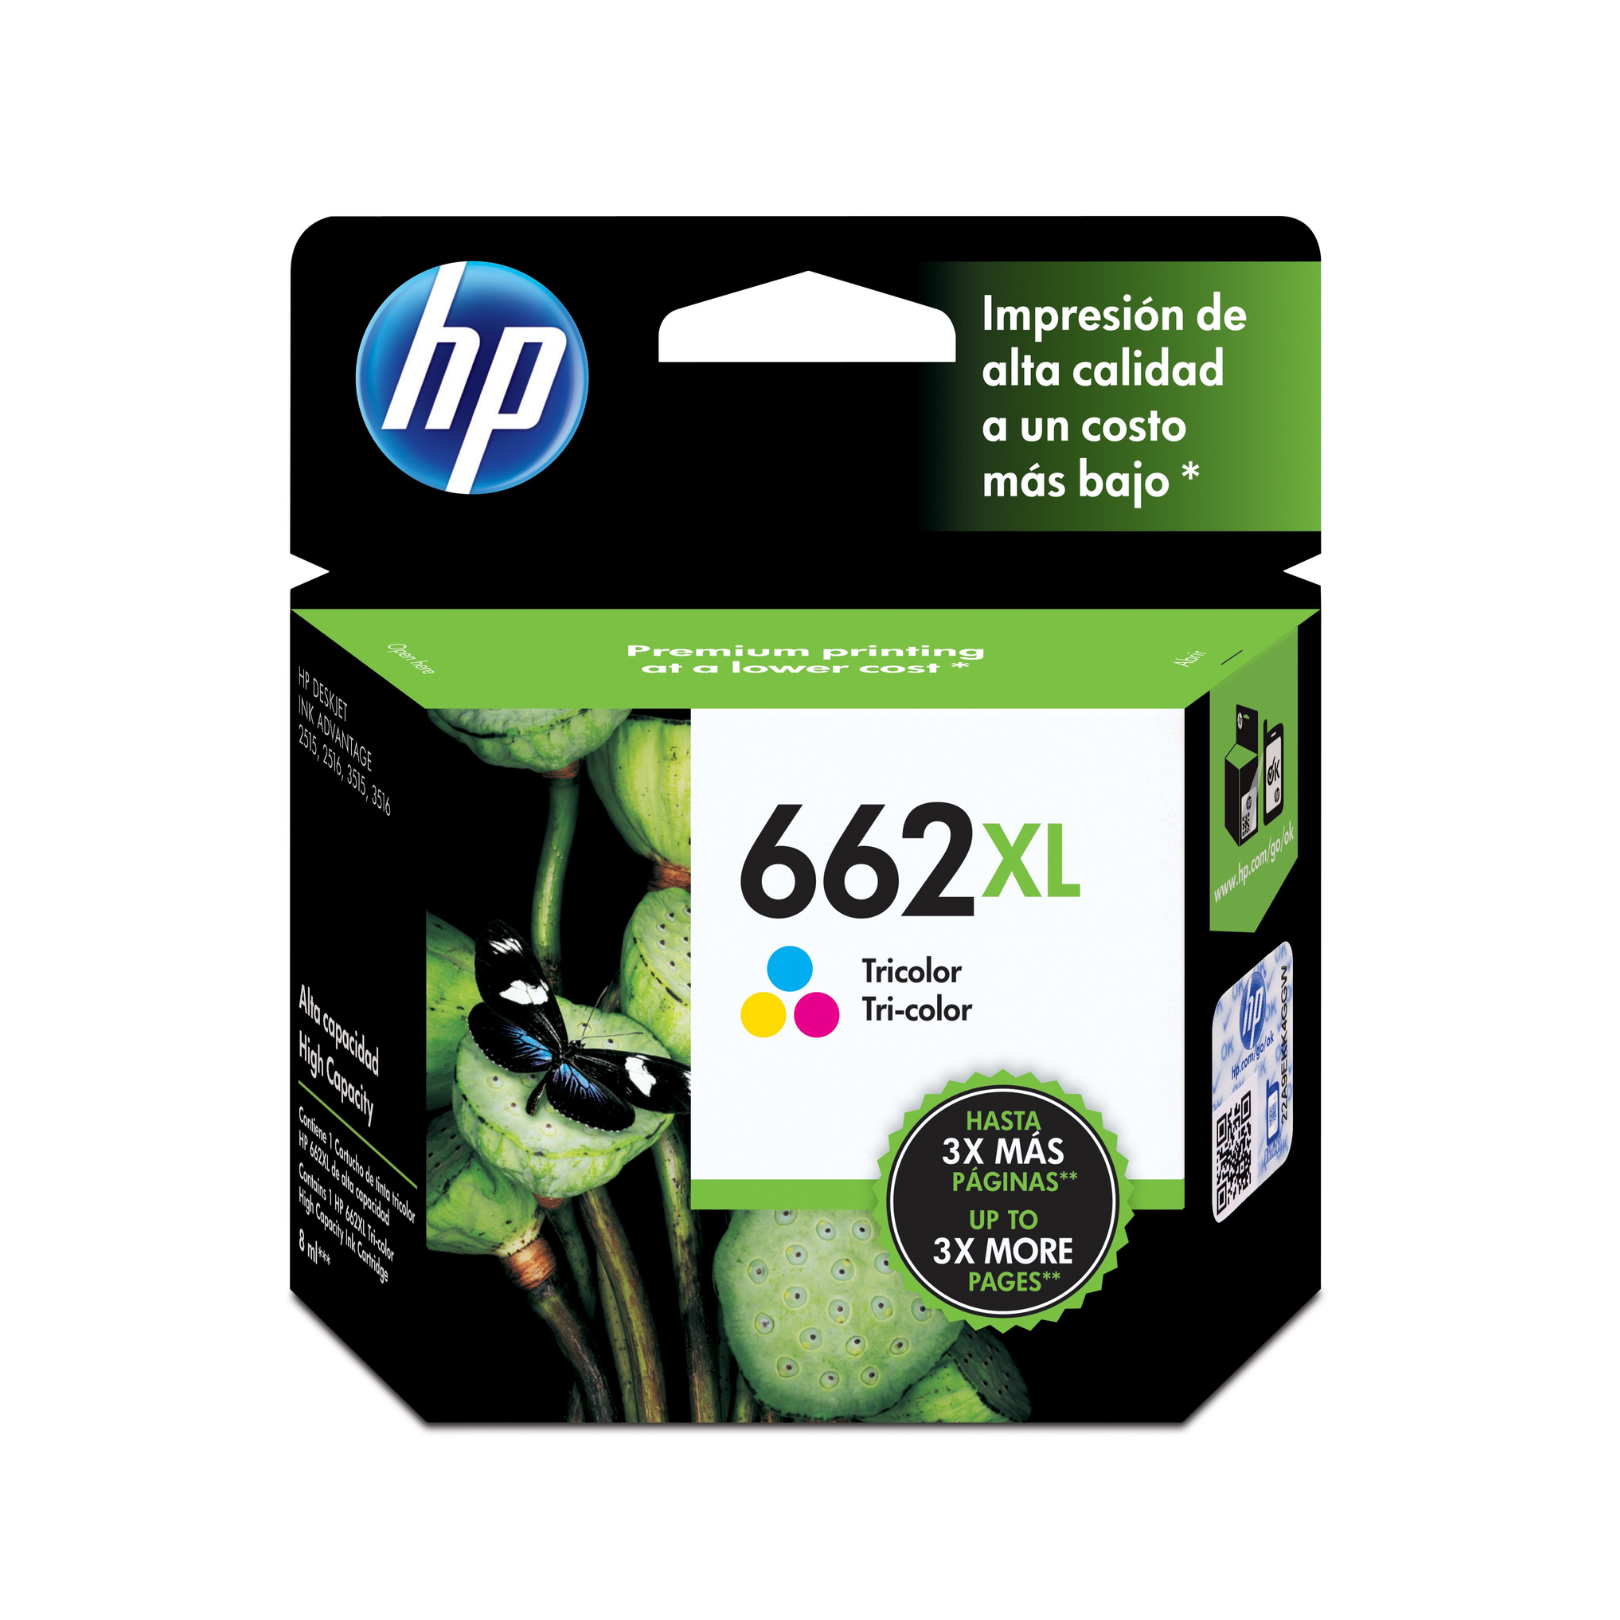 Cartucho de tinta HP 662XL Tricolor (CZ106AL) DeskJet 2515/3515 300 Pag.